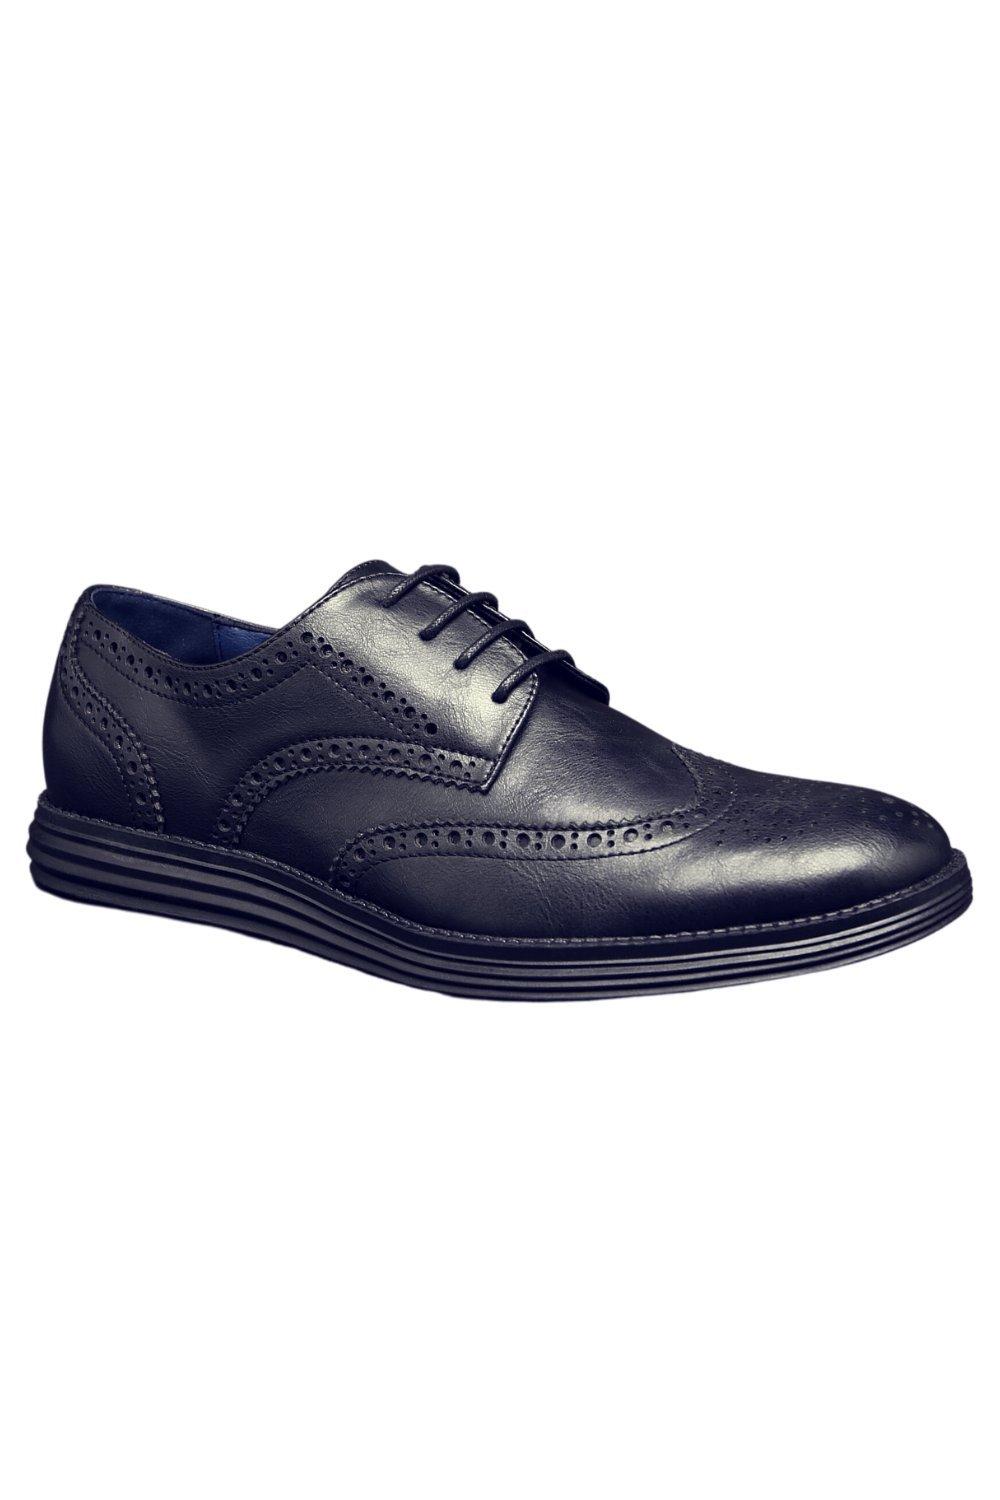 Кожаные деловые туфли на шнуровке в стиле смарт-офис TOP STAKA SHOES, черный мужские кожаные деловые туфли на шнуровке для офиса черный